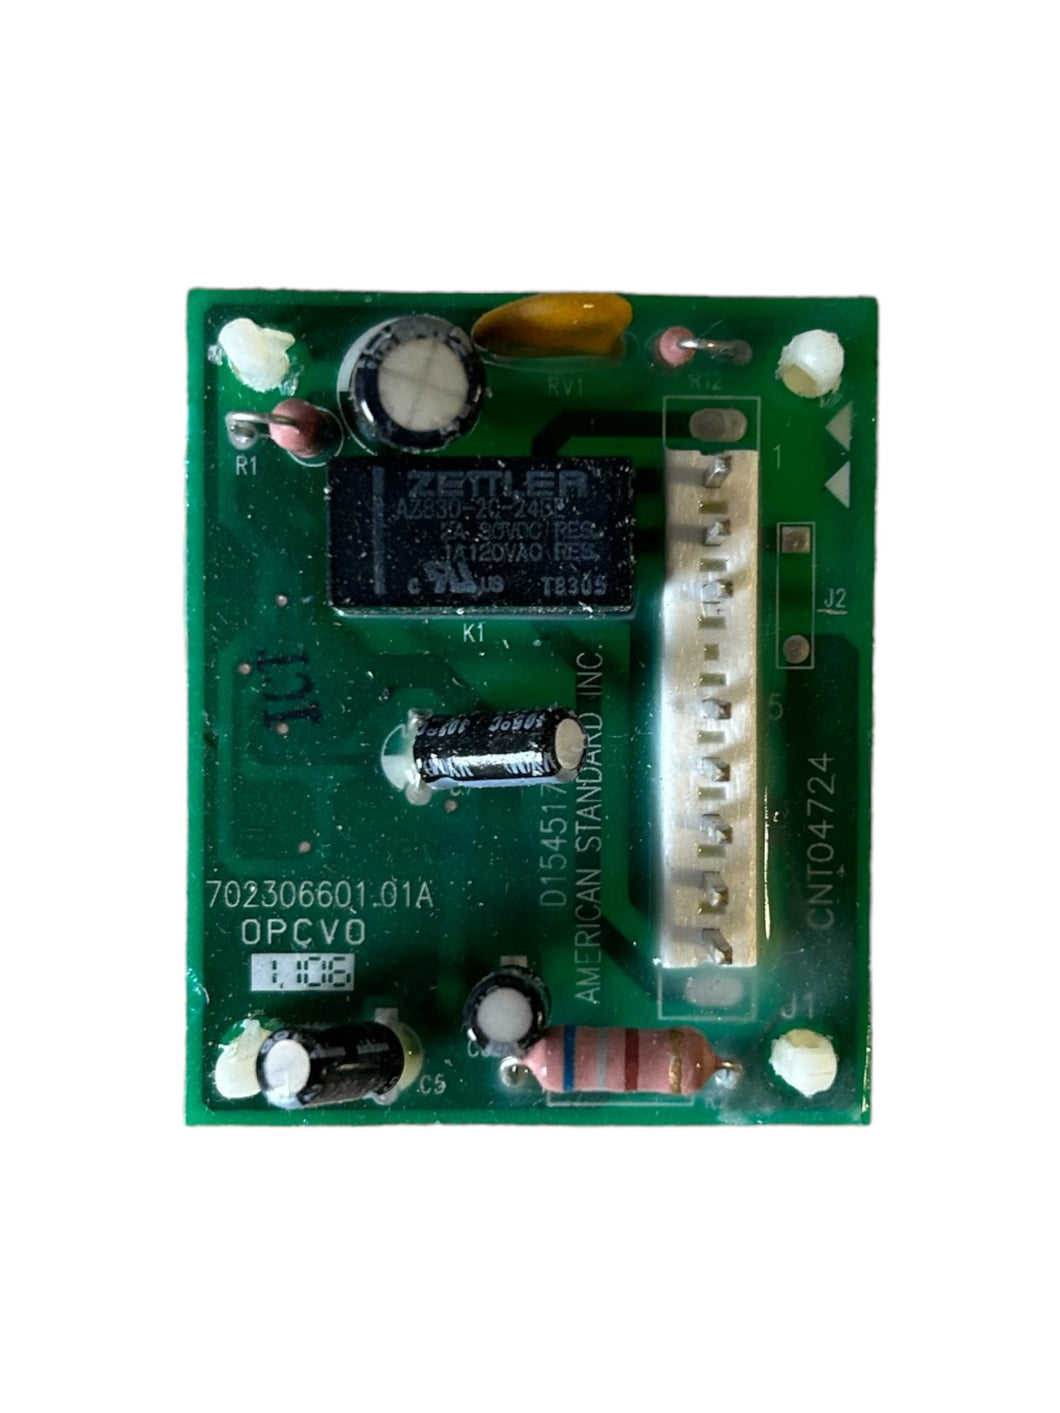 Trane American Standard, CNT04724, D154517P01, Control Circuit Board - NEW NO BOX - FreemanLiquidators - [product_description]